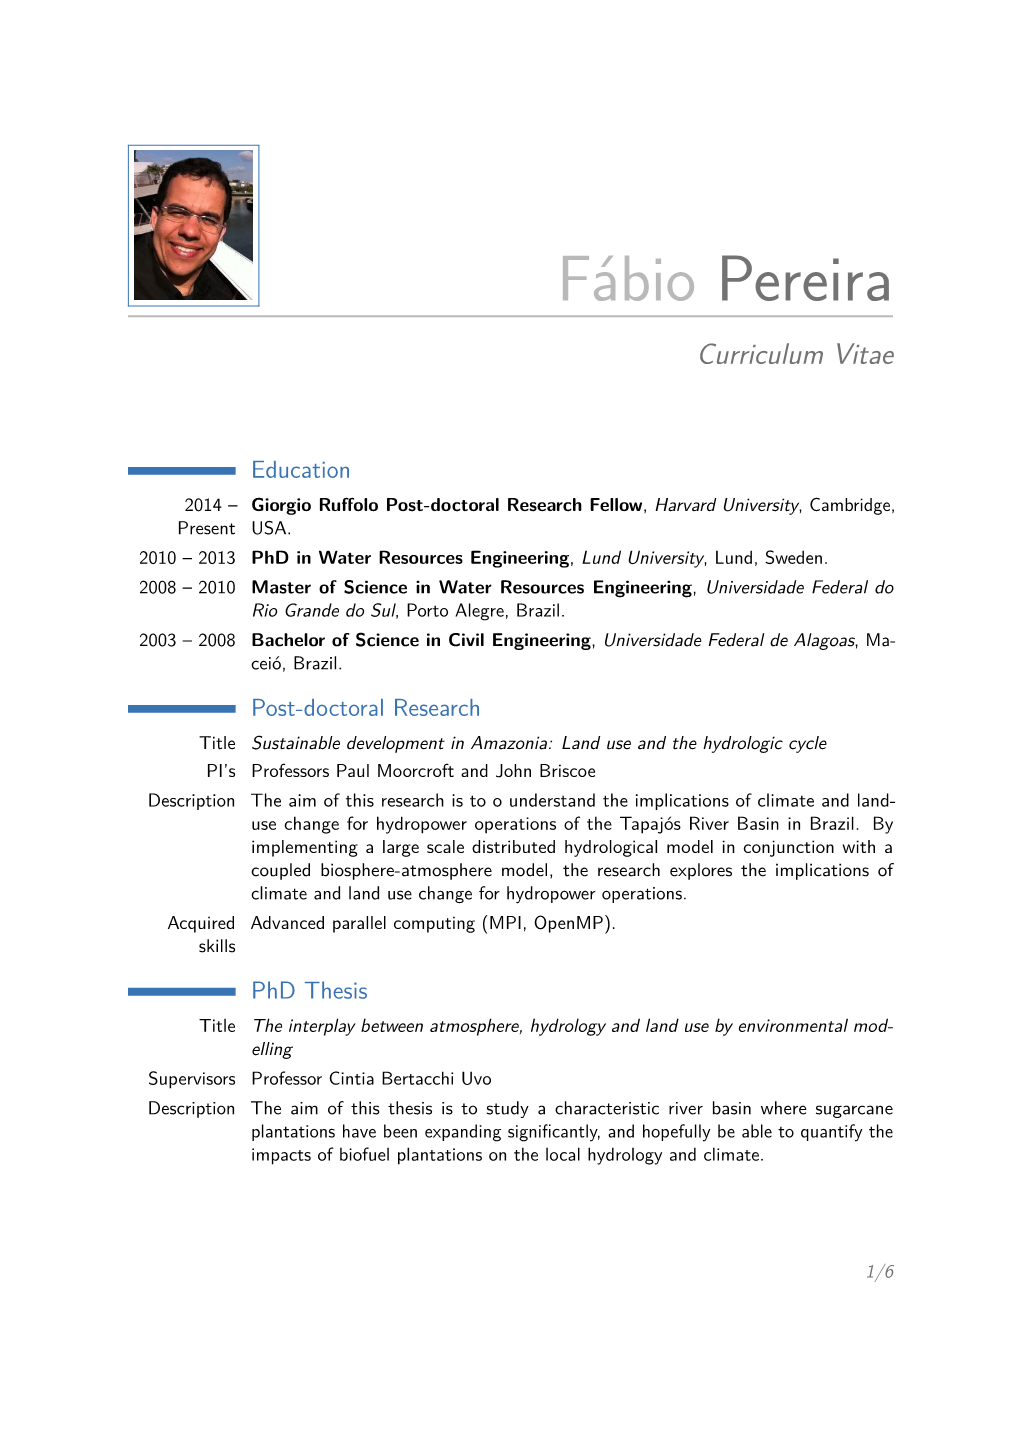 Fábio Pereira – Curriculum Vitae